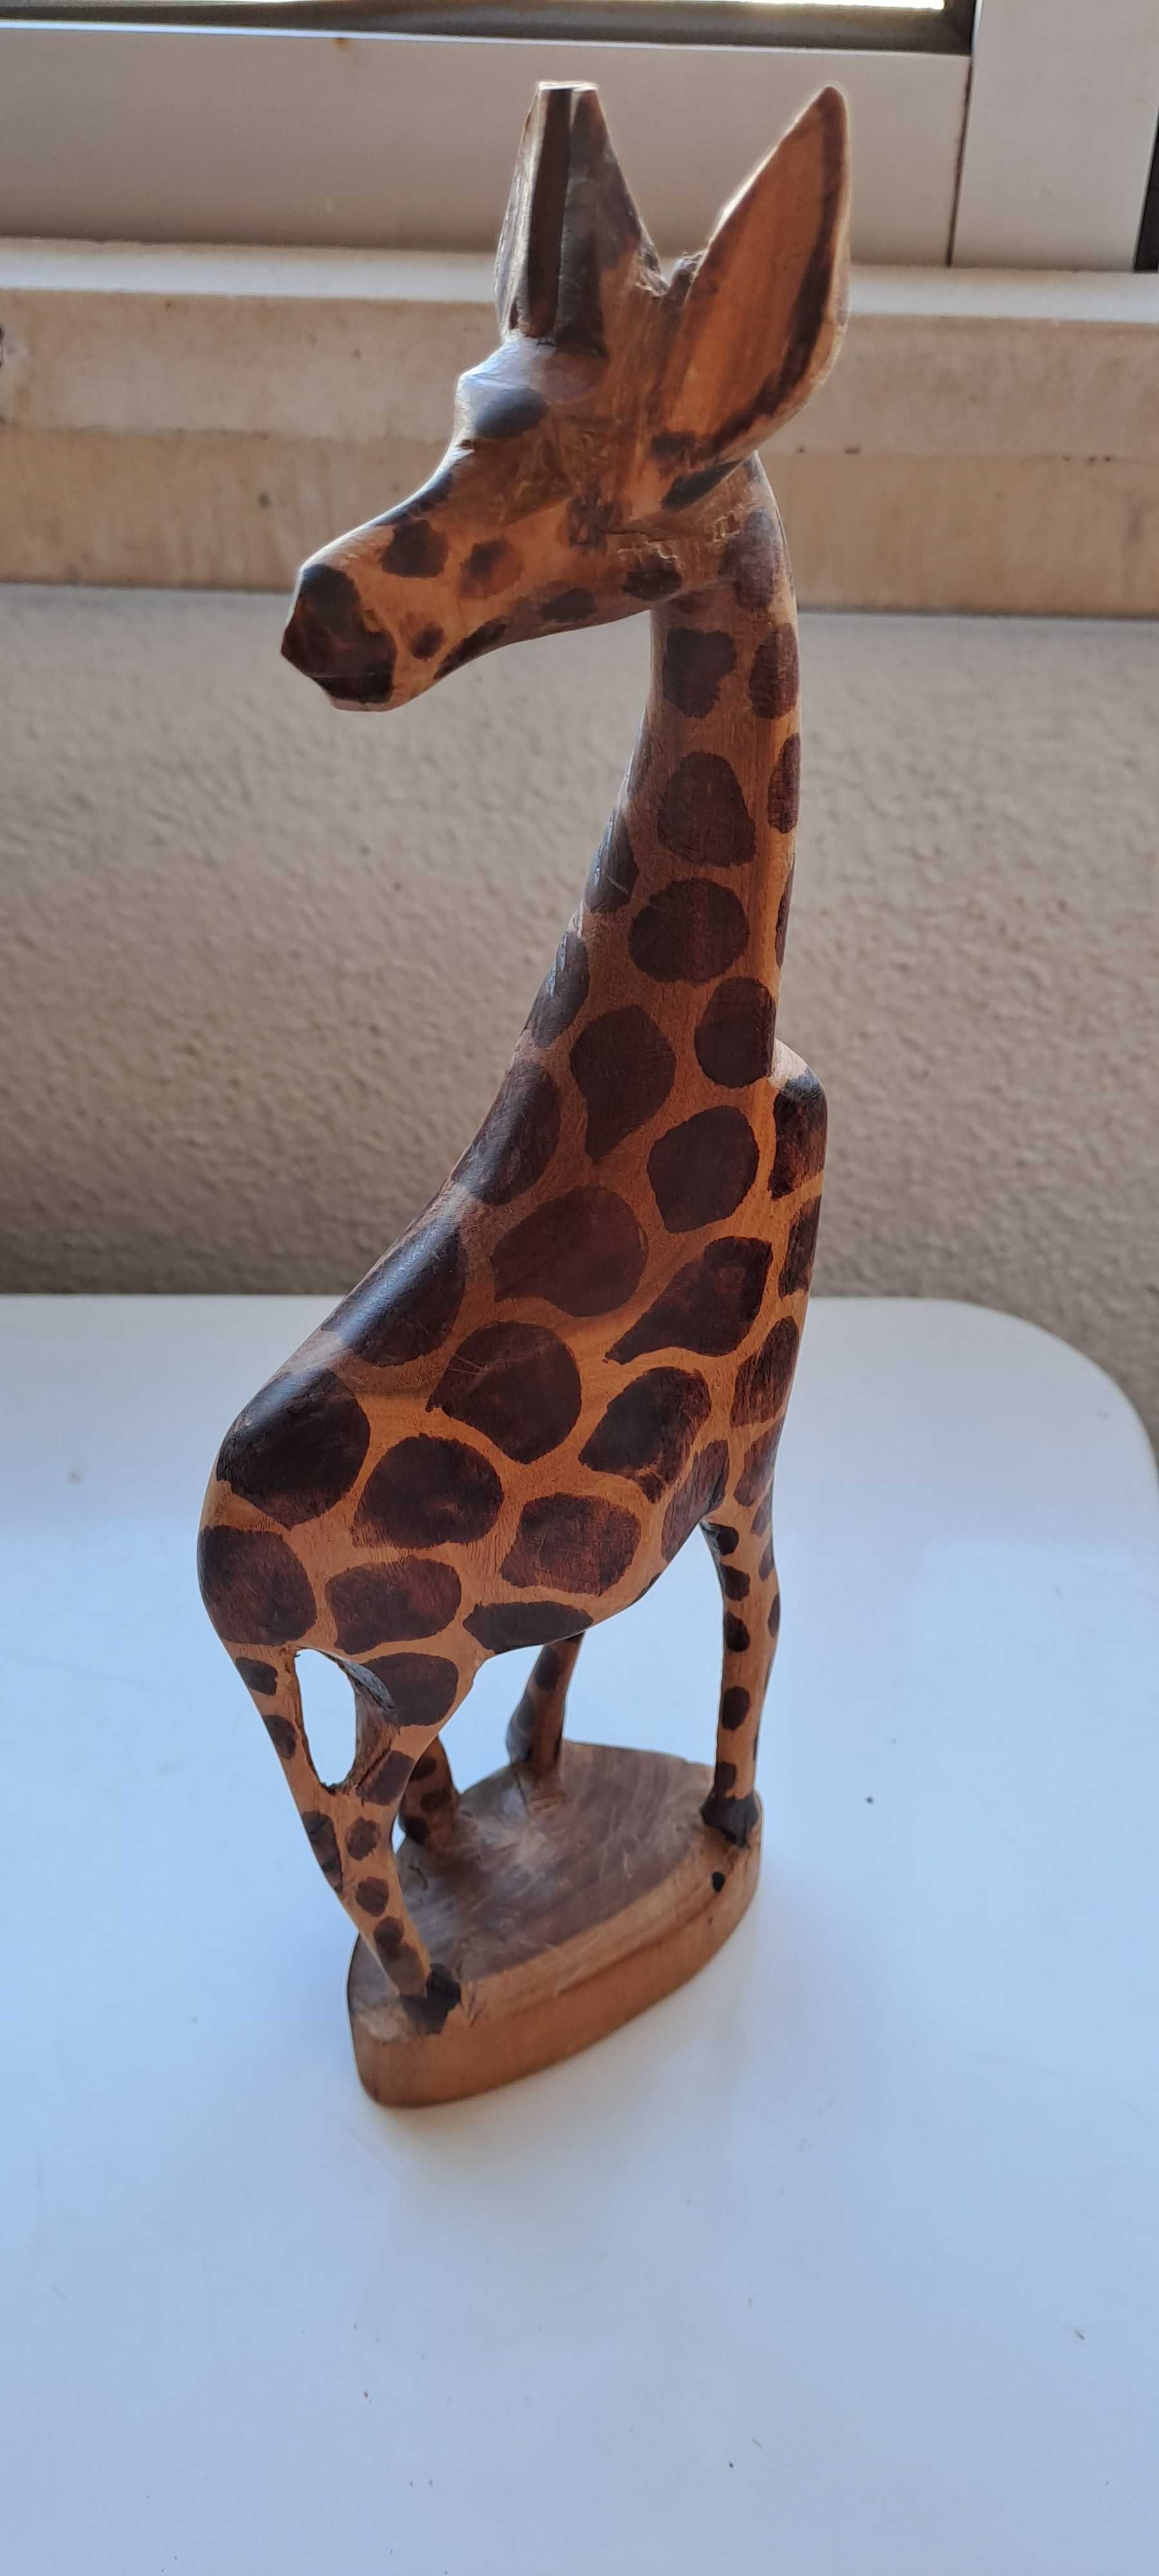 Girafa em madeira peça de artesanato Africana